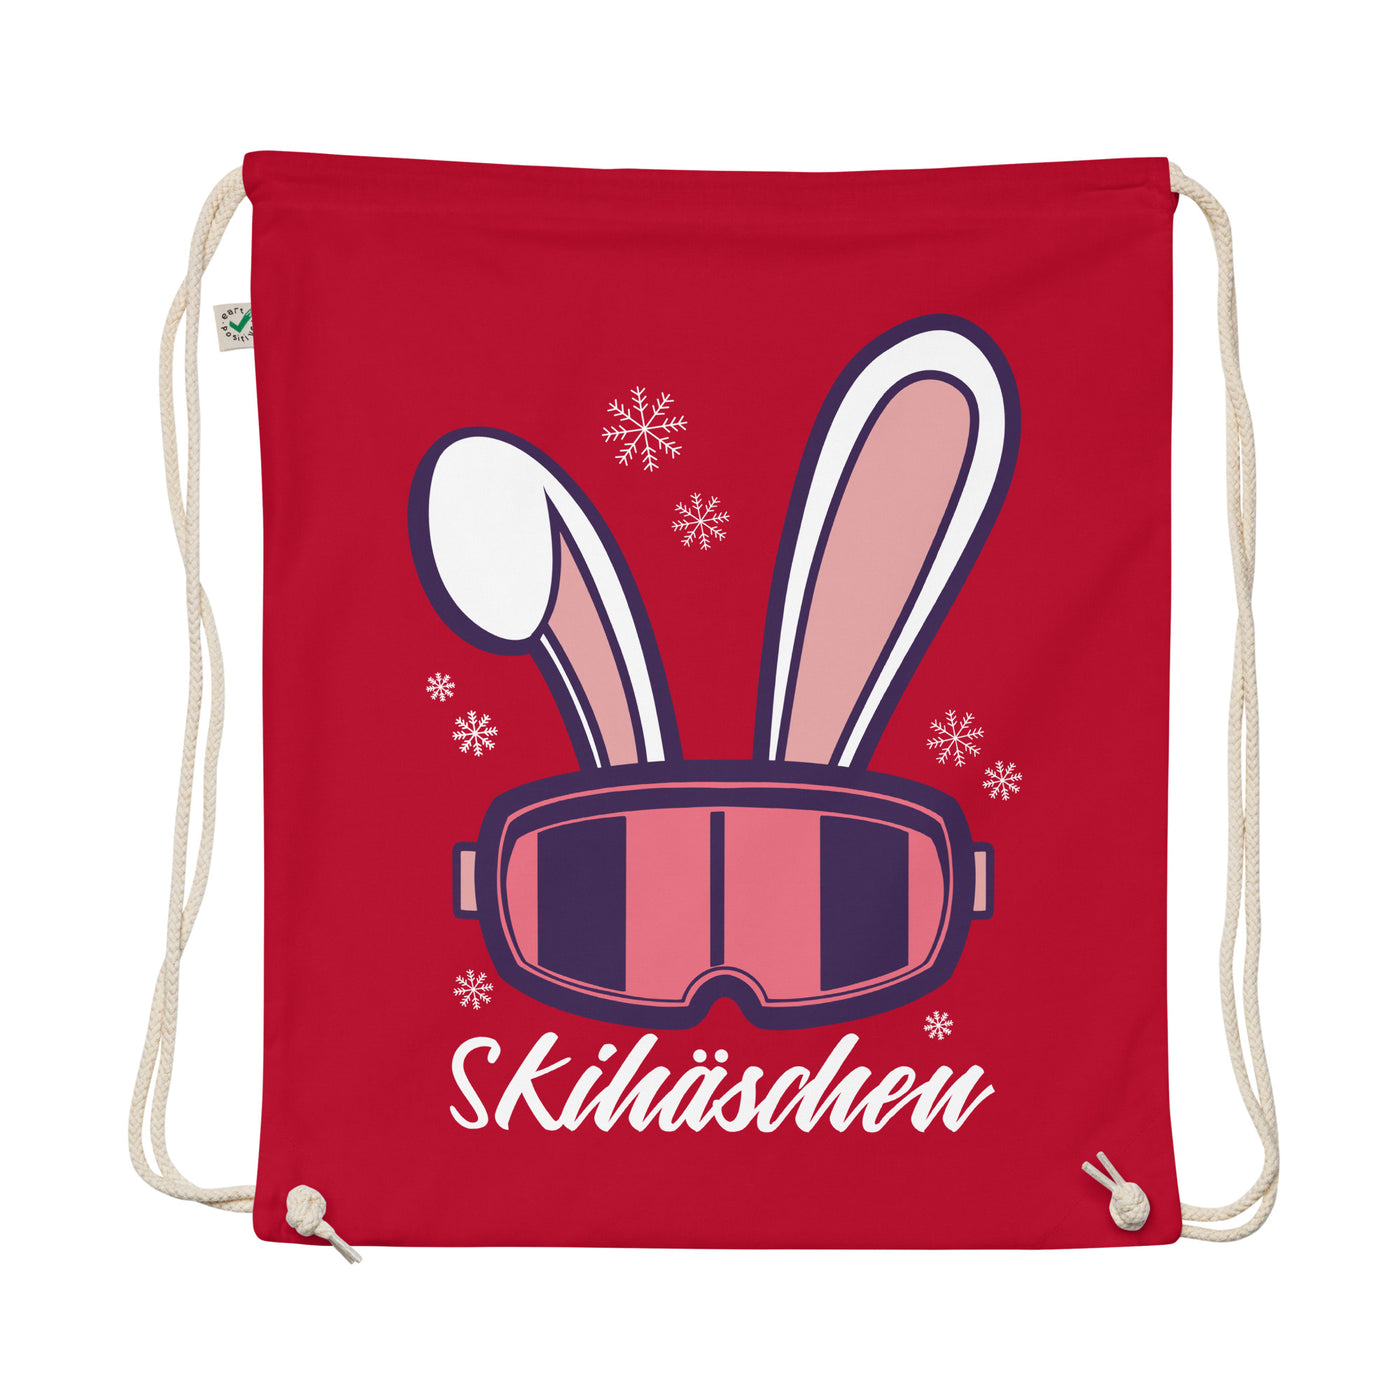 Skihäschen - (S.K) - Organic Turnbeutel klettern